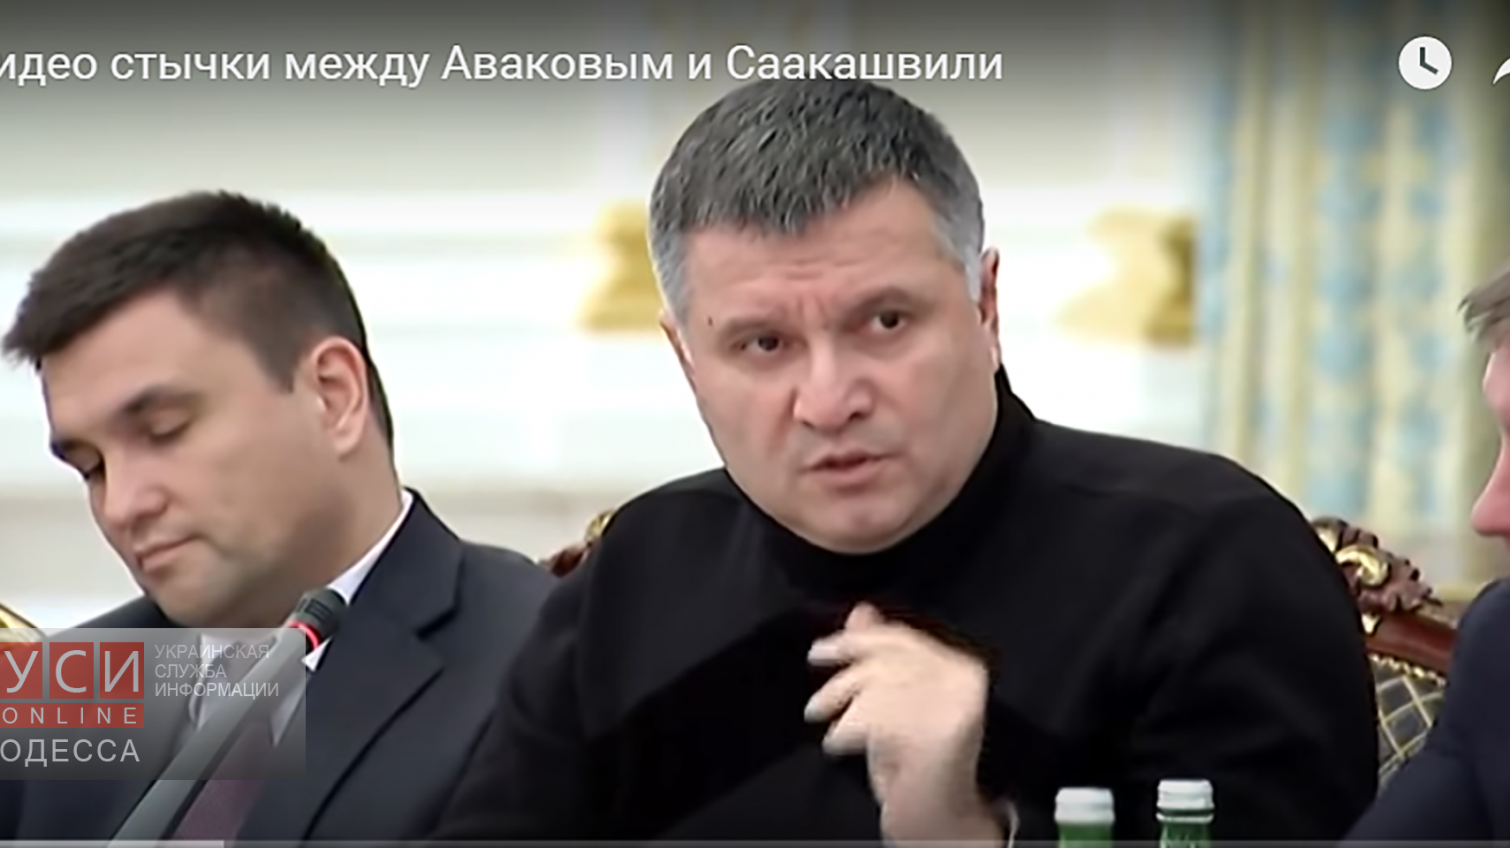 Арсен Аваков опубликовал видео конфликта с Саакашвили «фото»